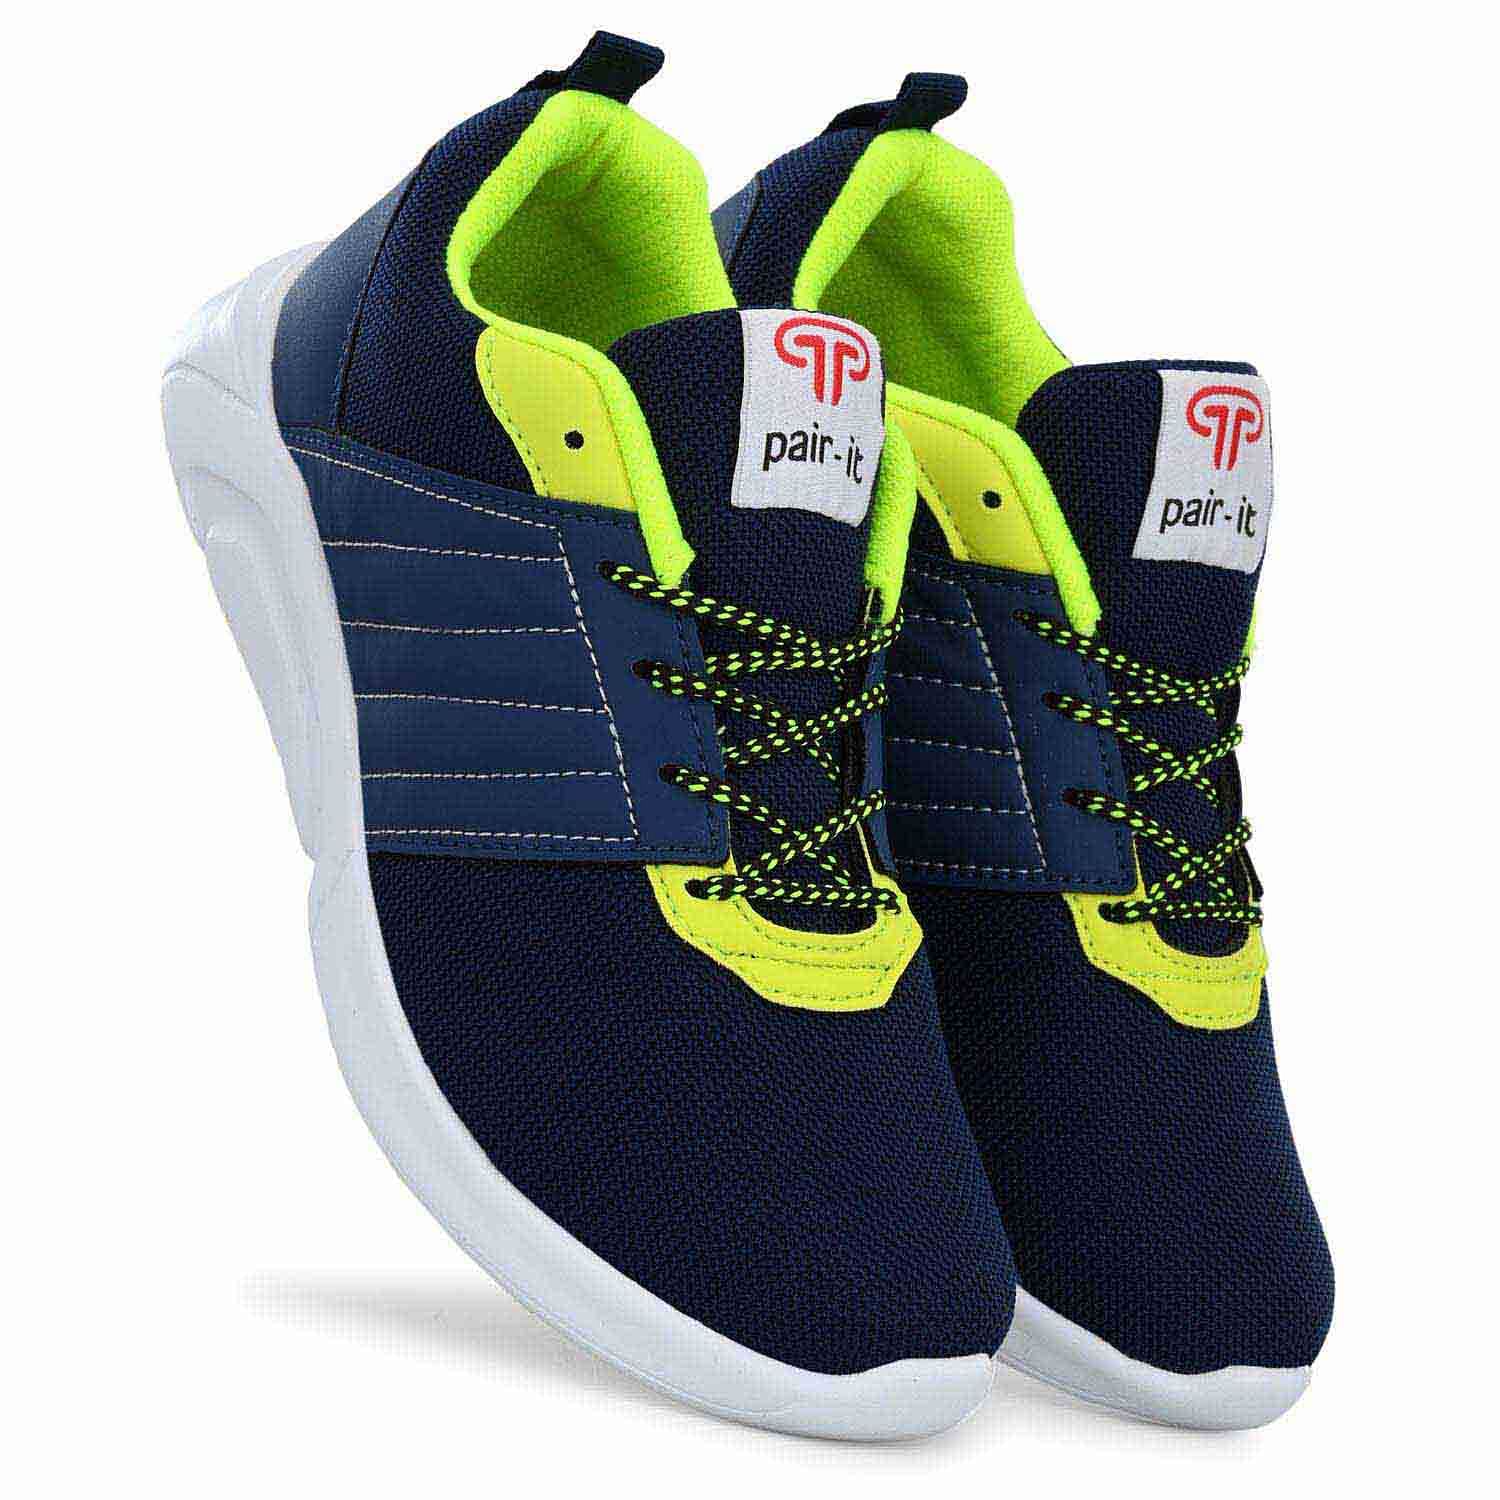 Pair-it Men's Sports Shoes-LZ-Presto-107-Blue